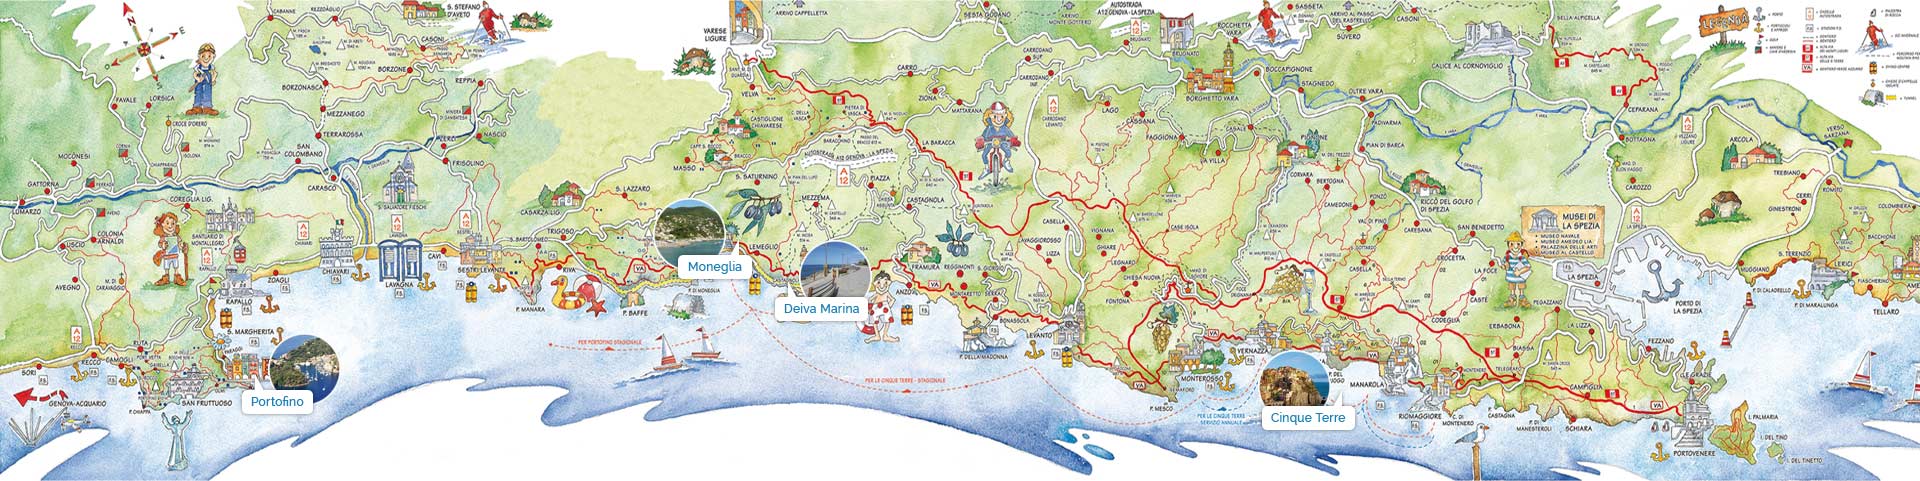 Mappa dove sono segnate le locazioni di Portofino, Moneglia, Deiva Marina e le Cinque Terre